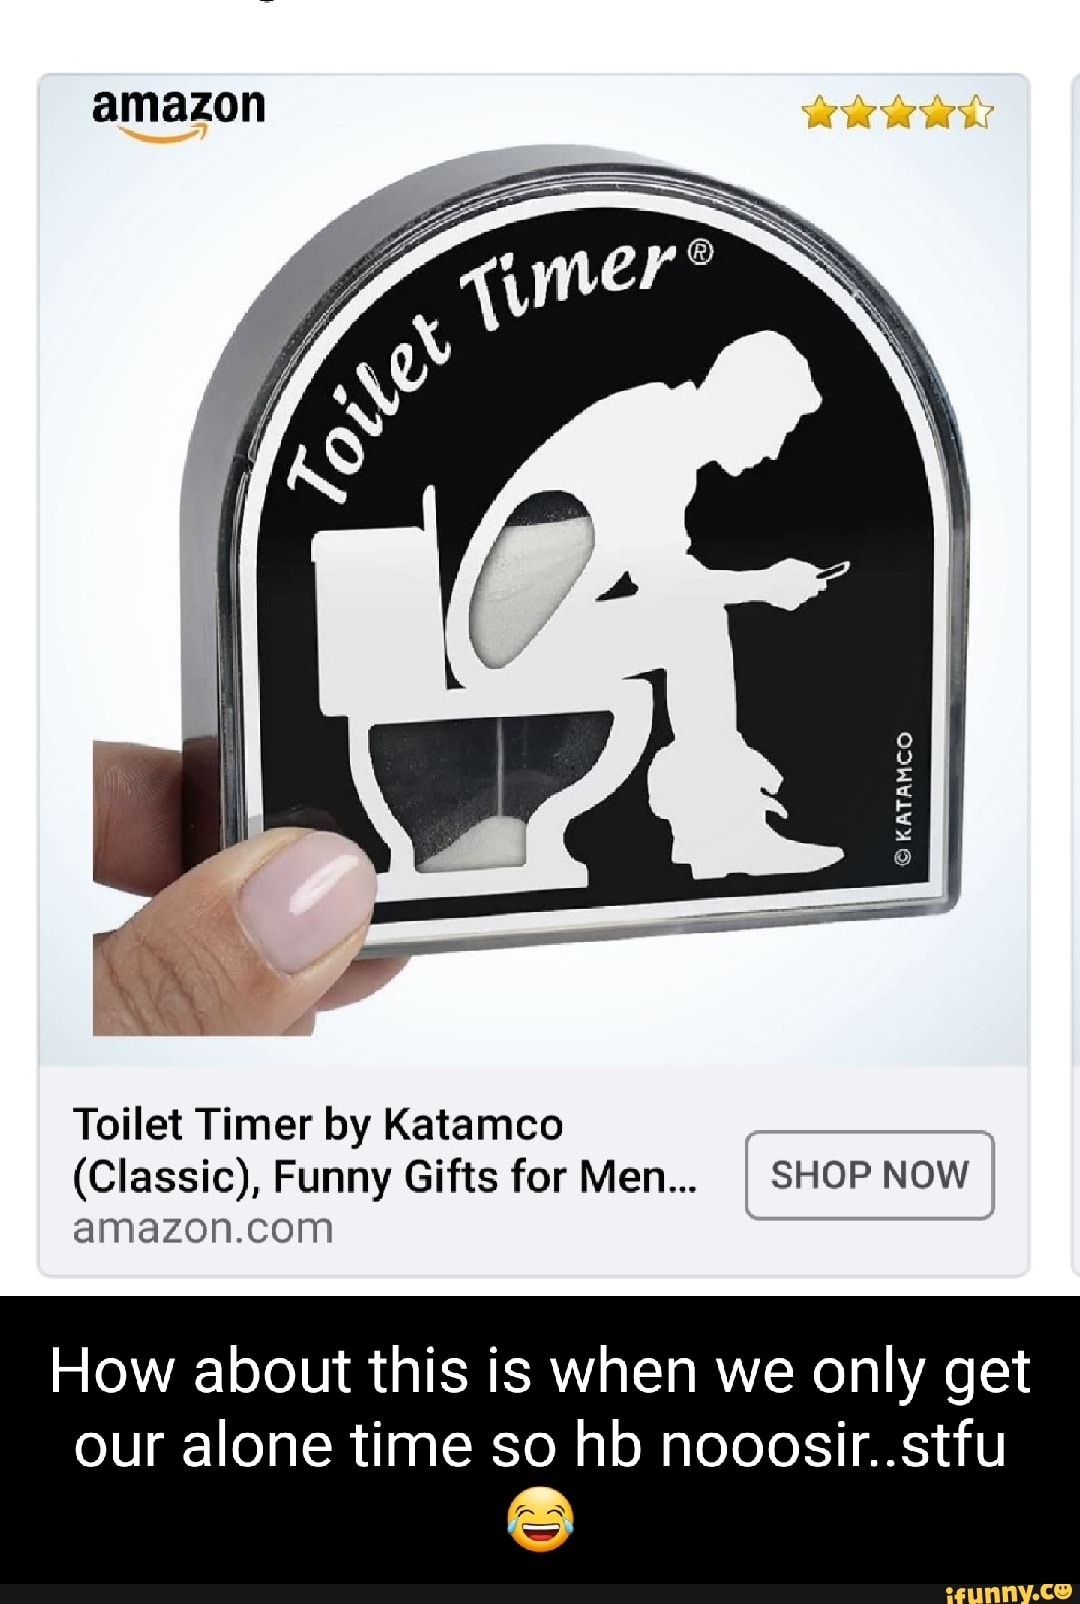 Toilet Timer - Great Gag Gift